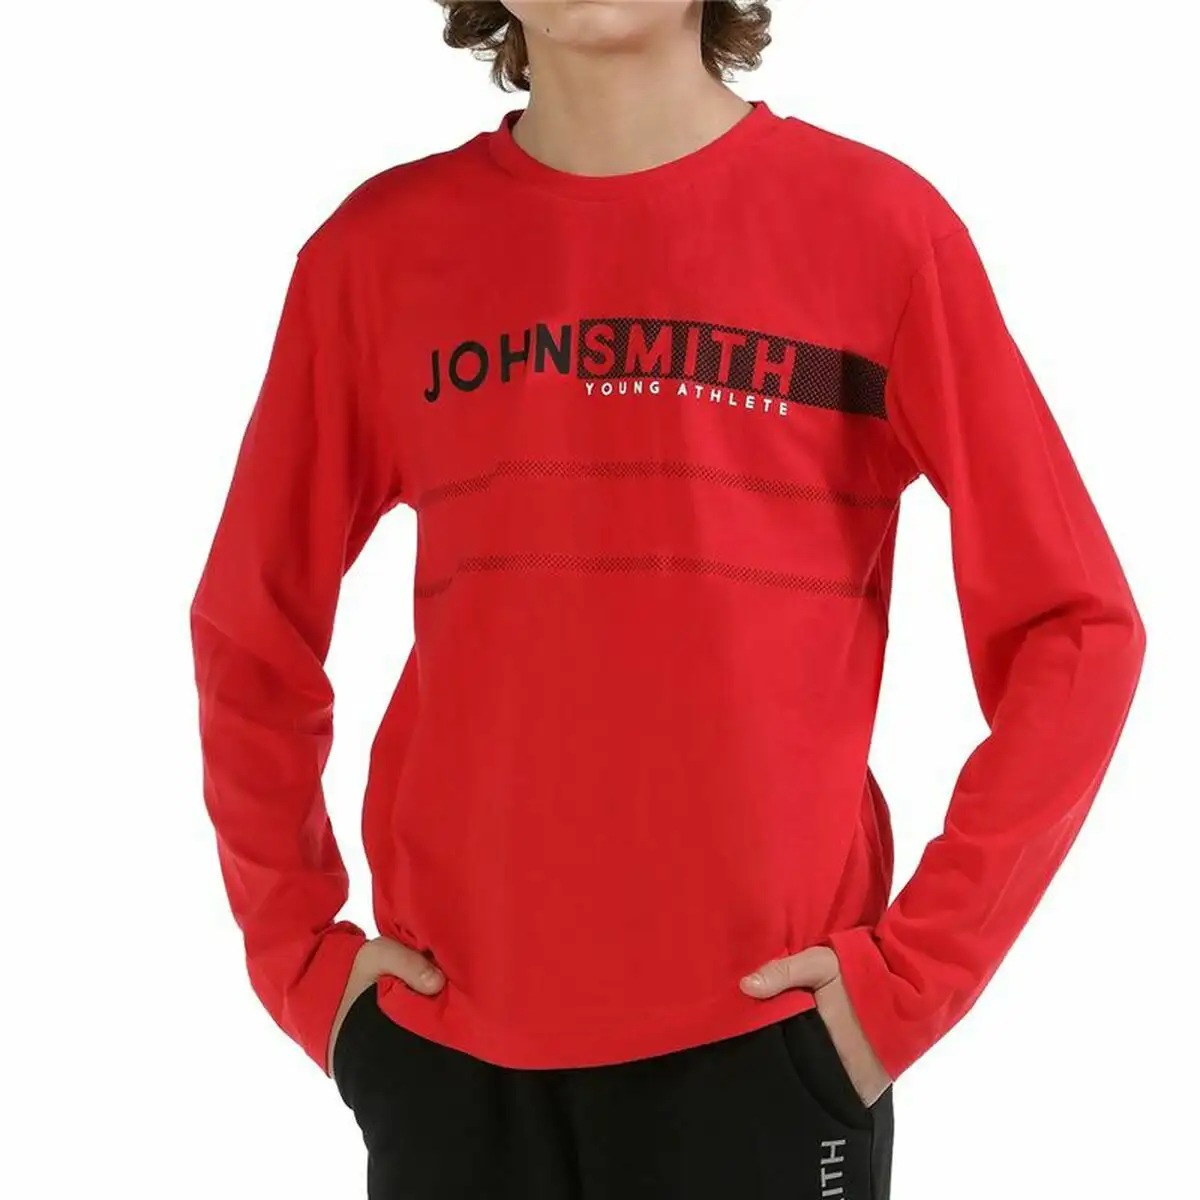 T shirt a manches longues enfant john smith bordo rouge_6631. DIAYTAR SENEGAL - Votre Portail Vers l'Exclusivité. Explorez notre boutique en ligne pour découvrir des produits uniques et raffinés, conçus pour ceux qui recherchent l'excellence.